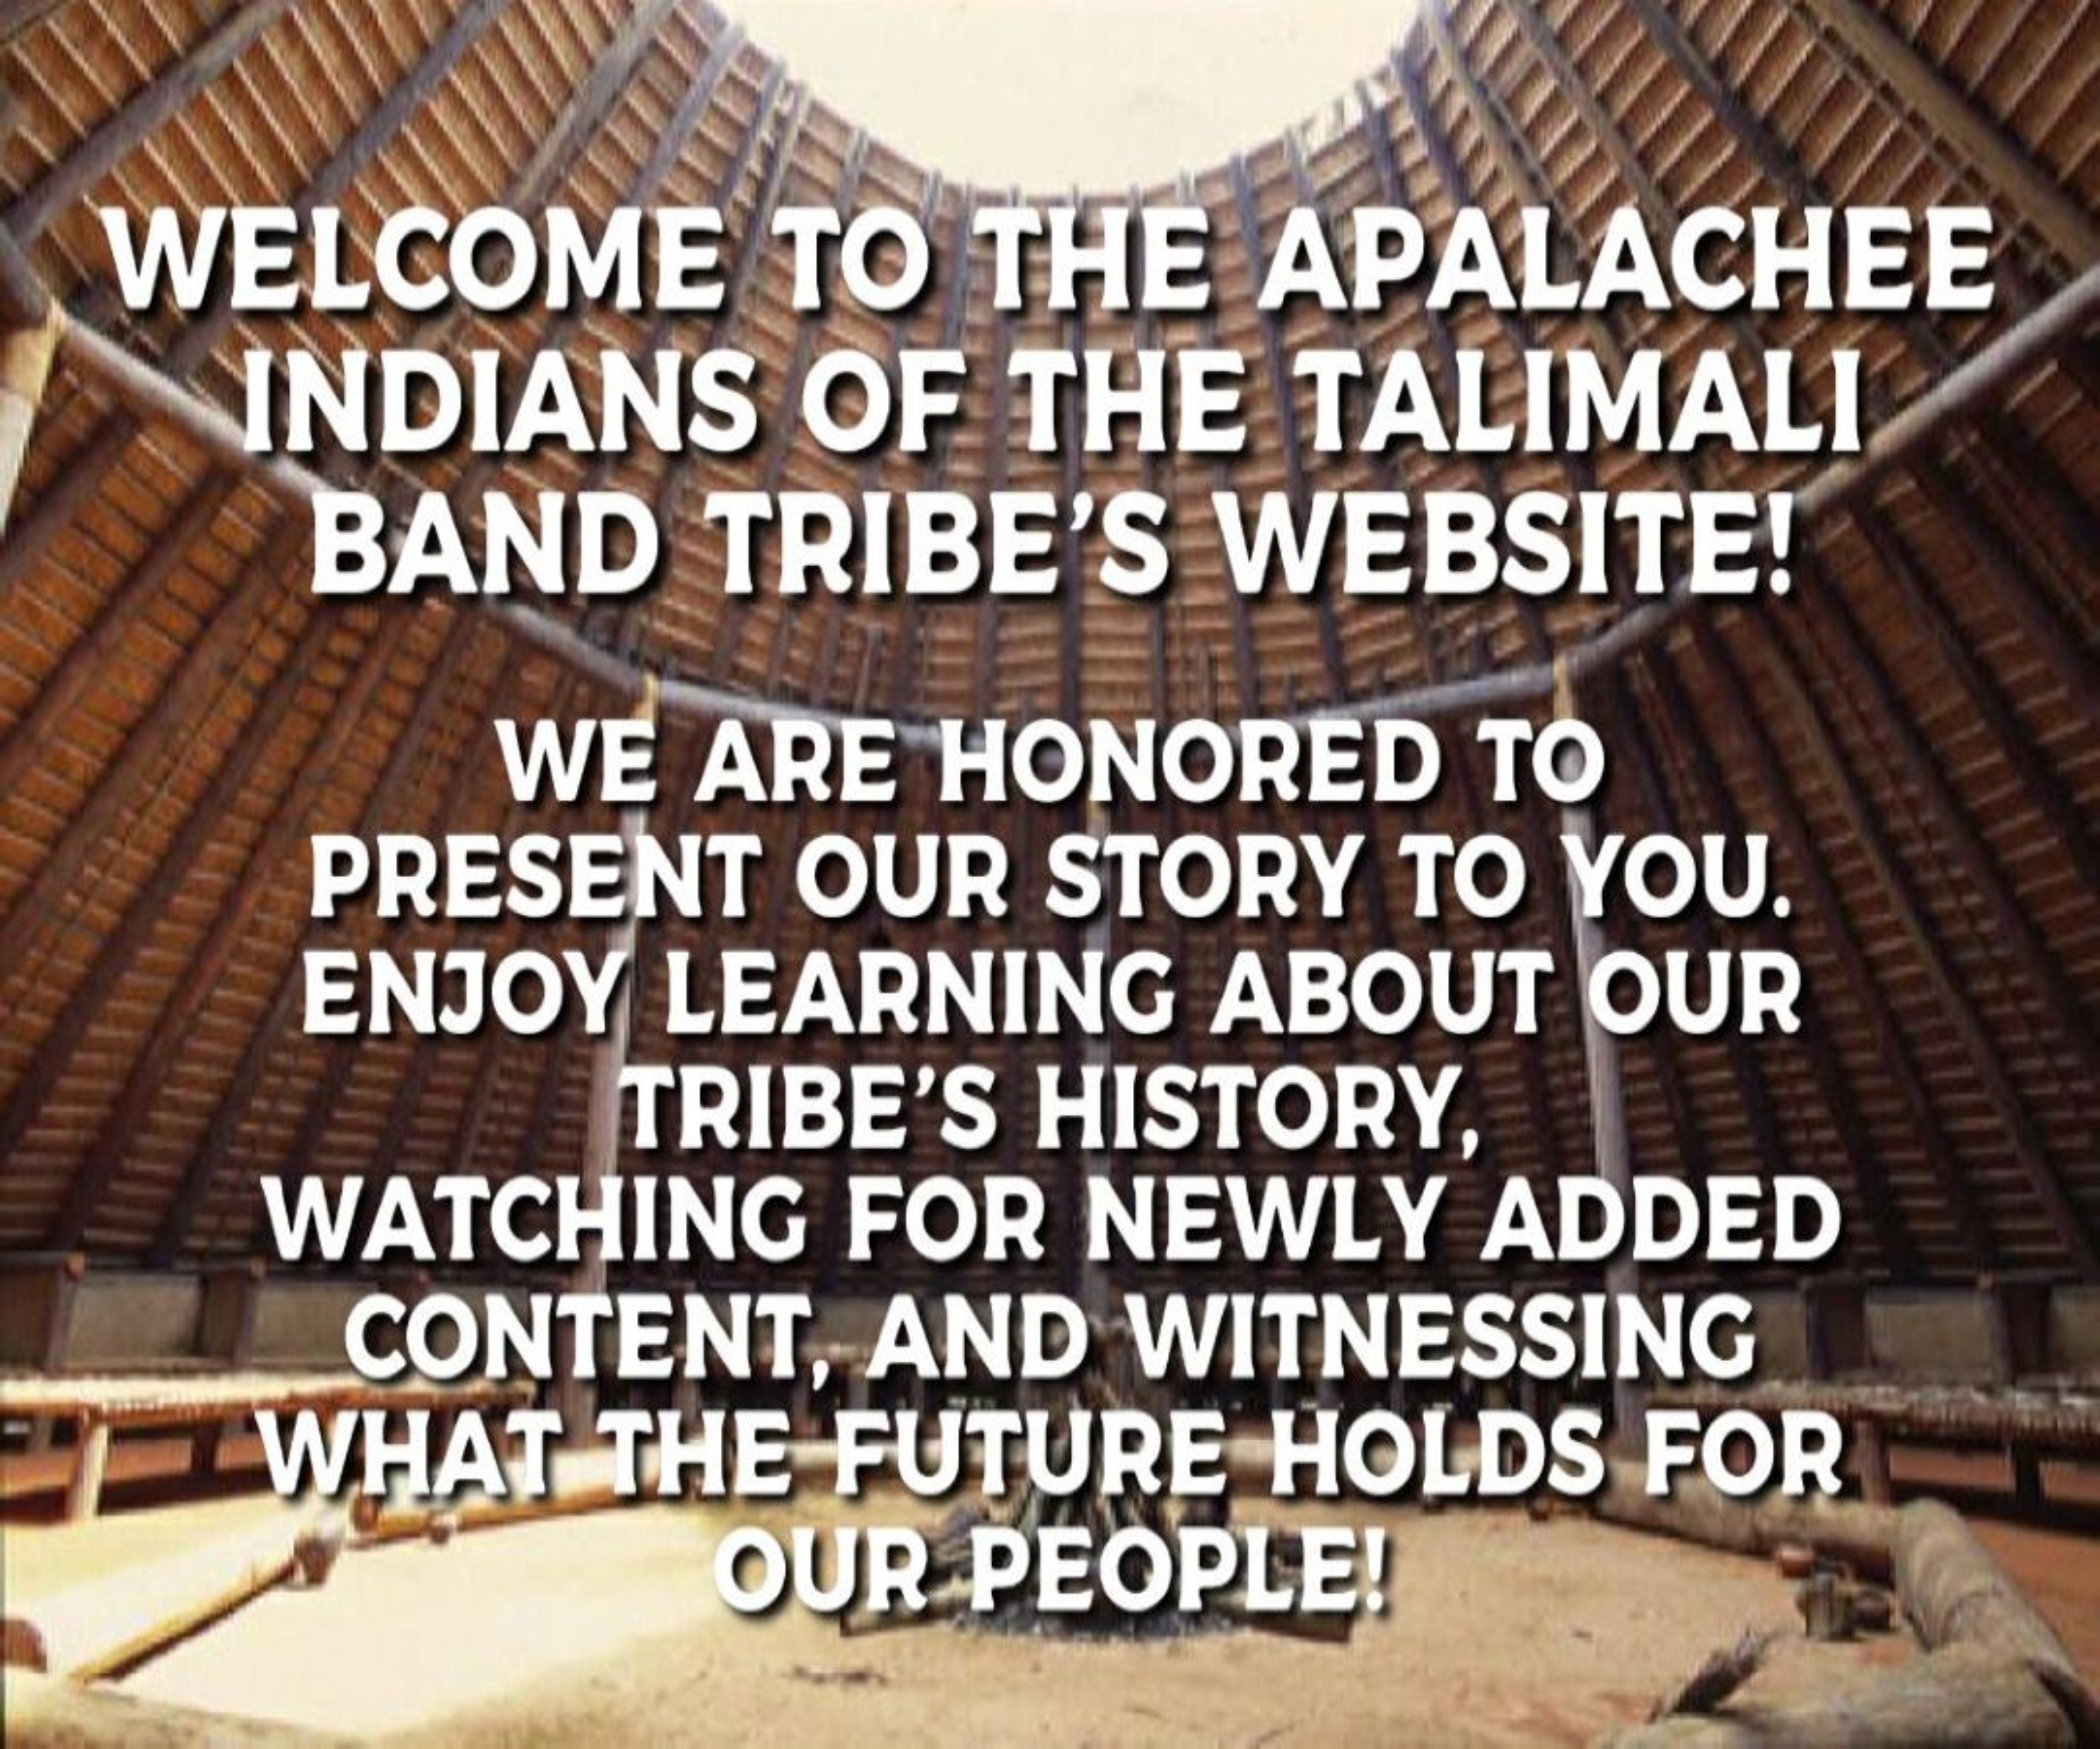 Apalachee, Apalachee Indians, Talimali, Talimali band